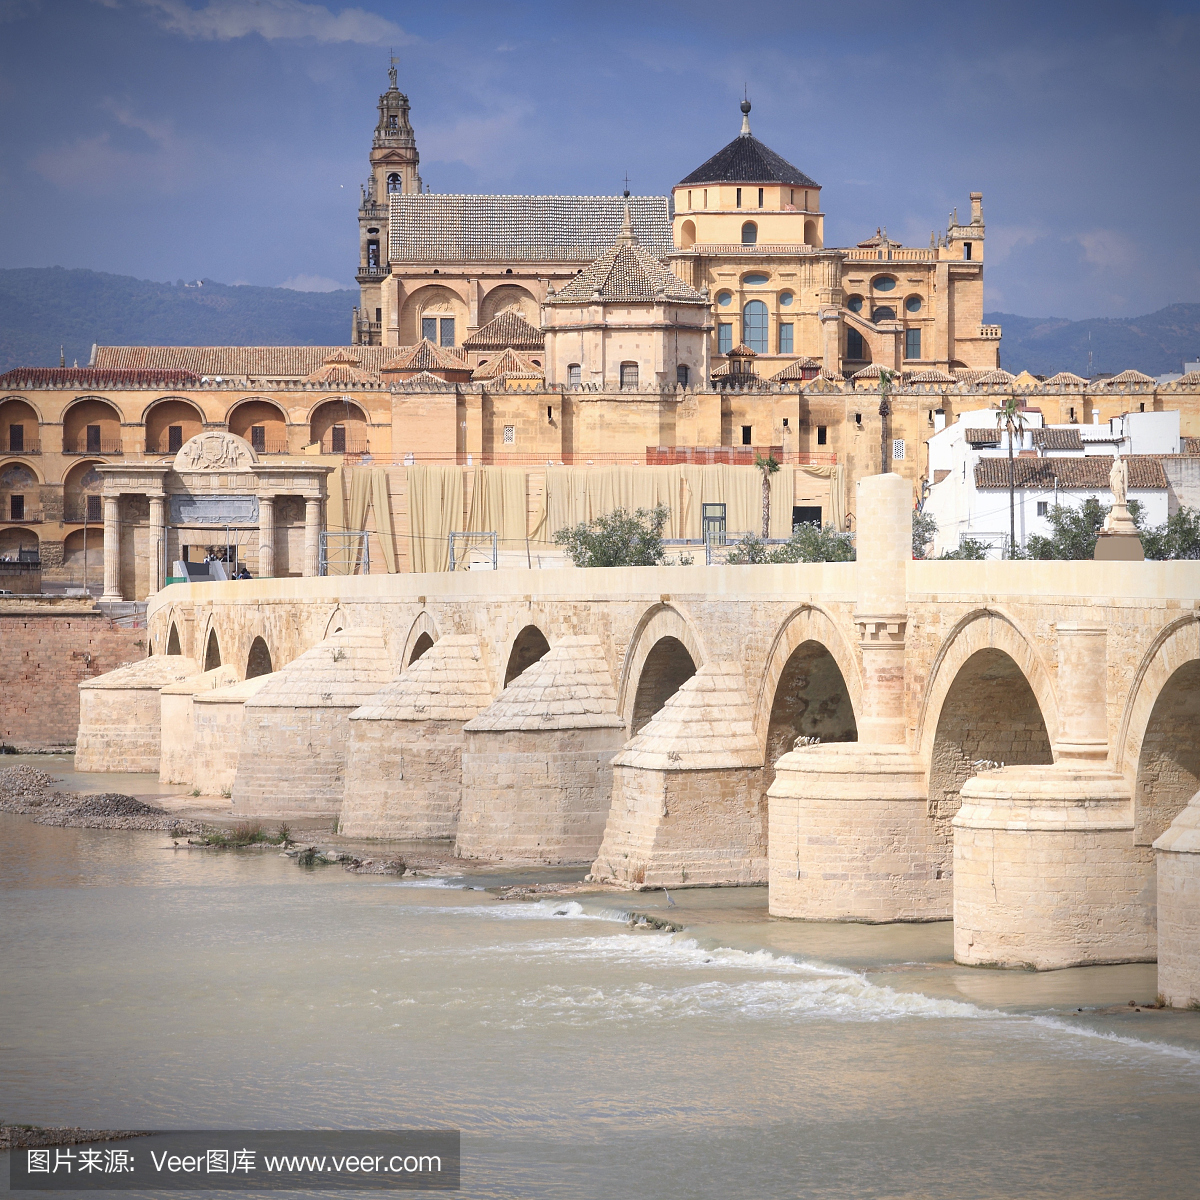 罗马桥,西班牙罗马桥,科尔多瓦清真寺,科尔多瓦